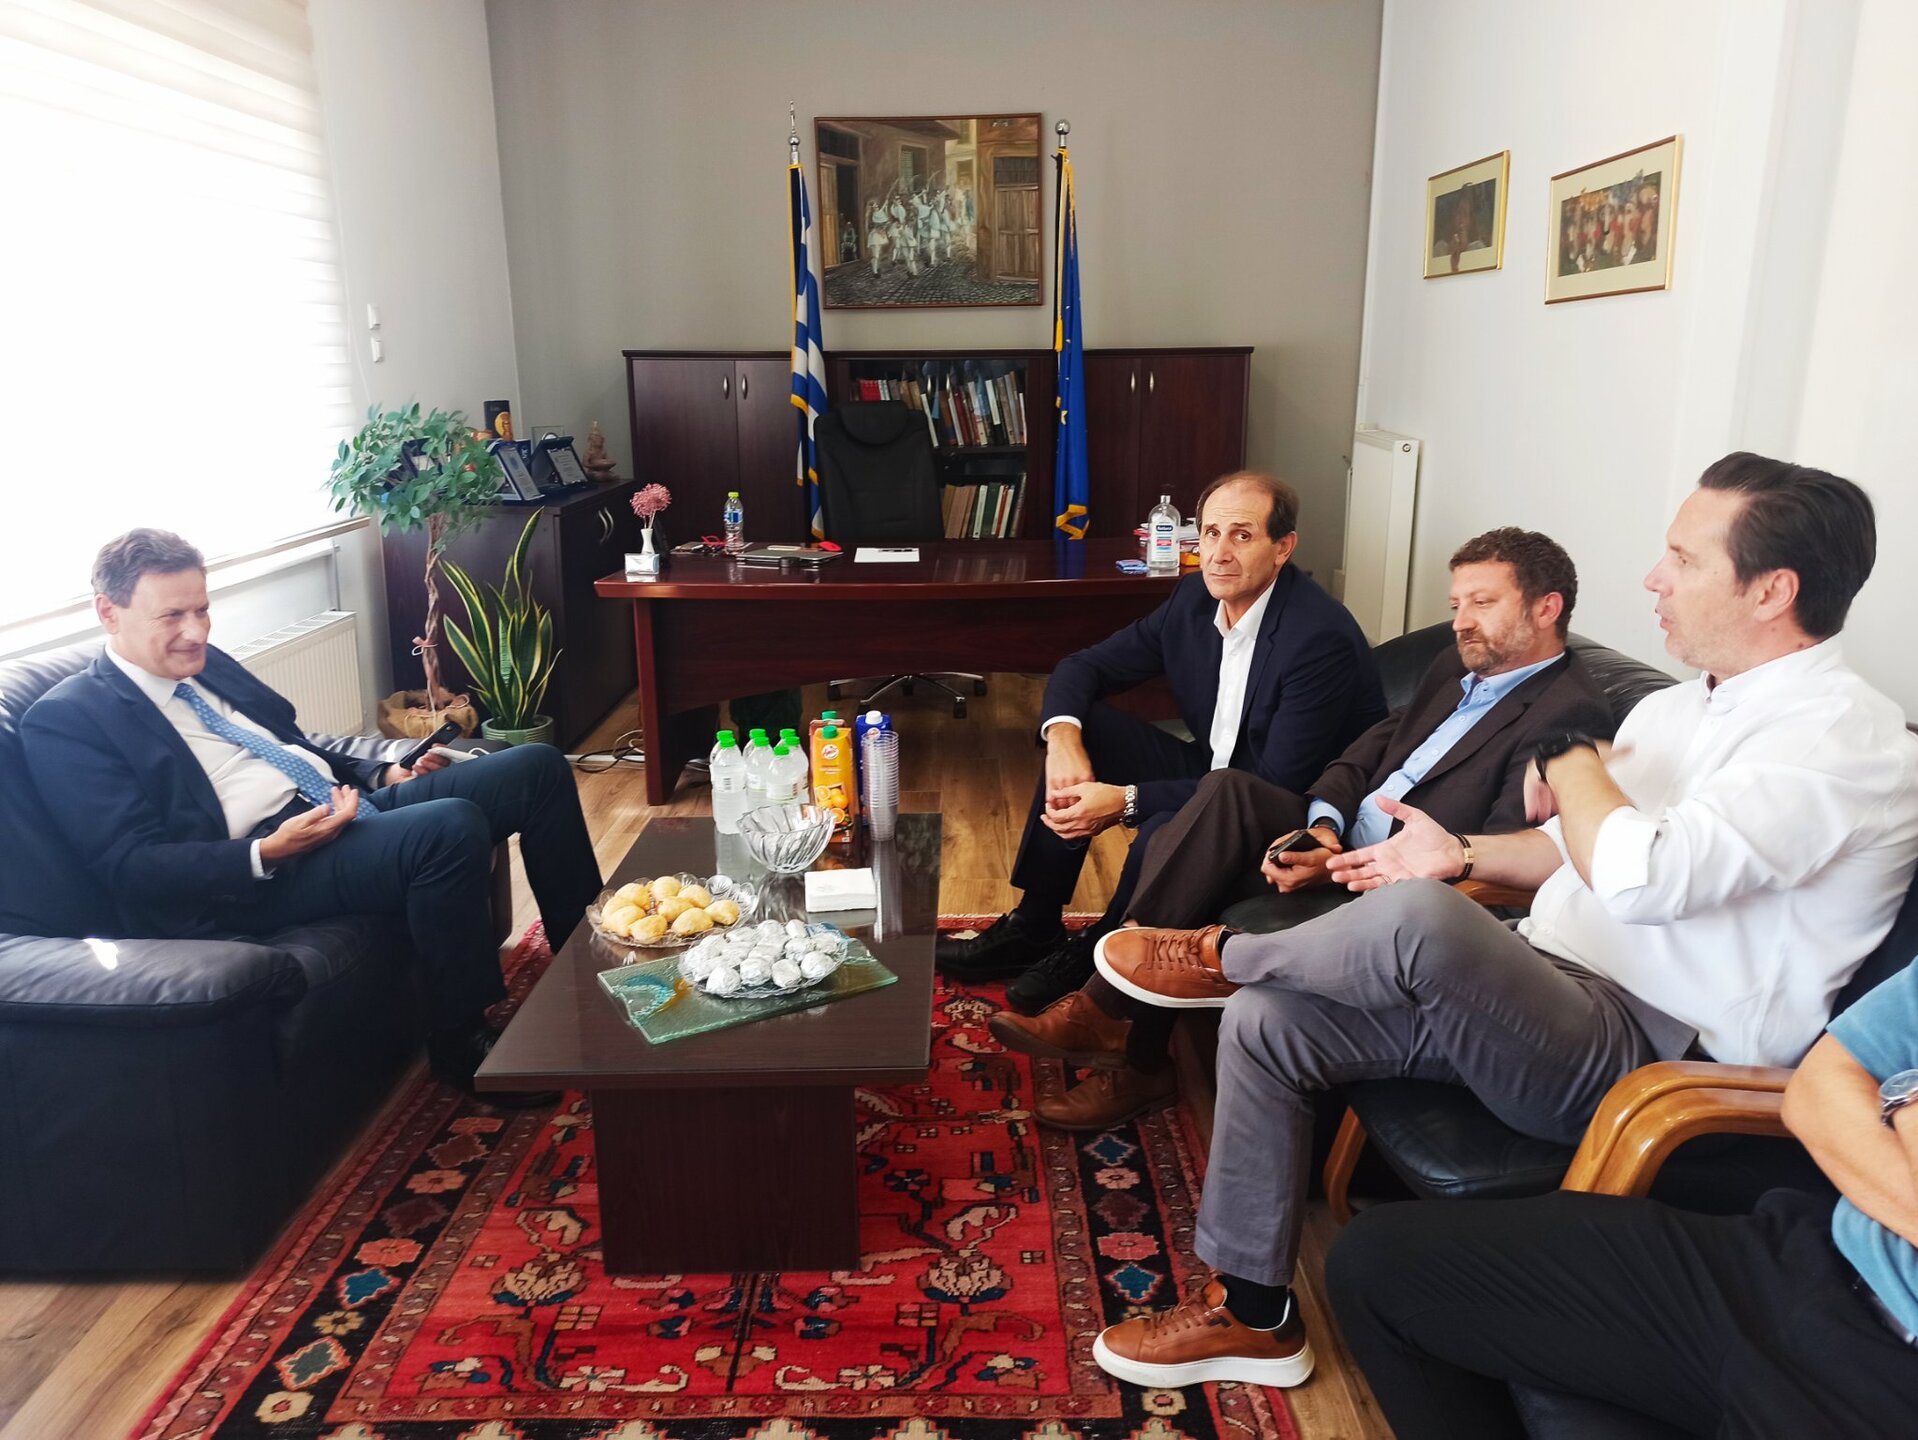 Θέματα του Δήμου Νάουσας στο επίκεντρο της συζήτησης του Ν. Καρανικόλα με κυβερνητικά στελέχη στο Δημαρχείο